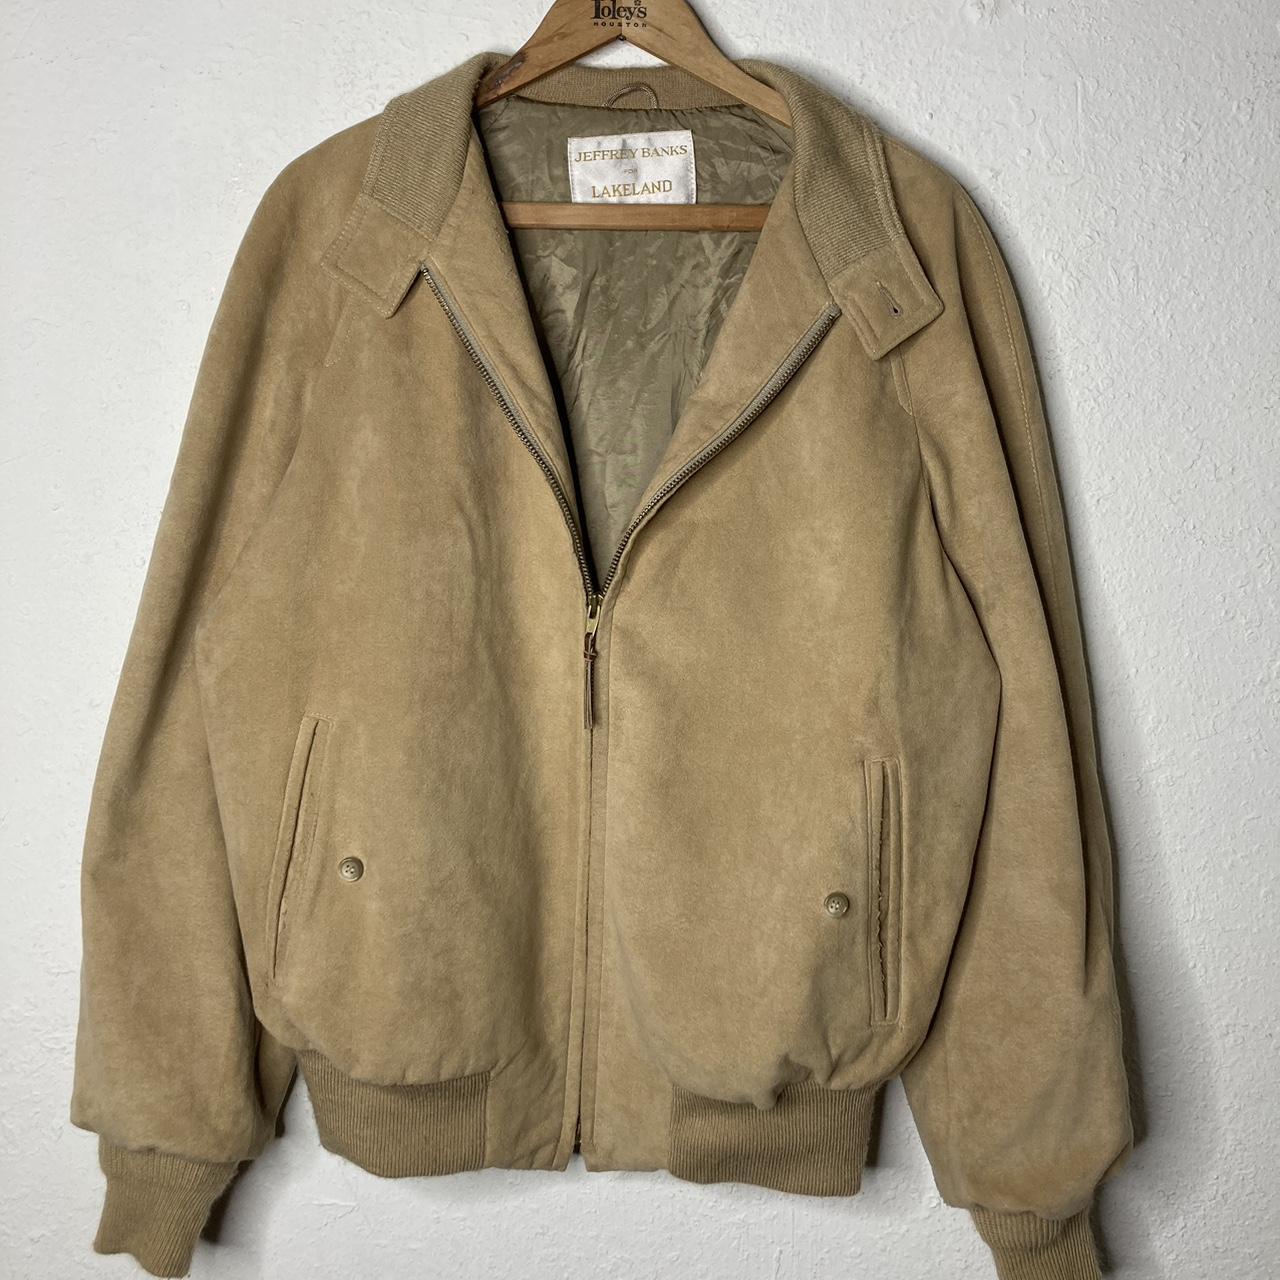 Vintage Lakeland Suede Leather Bomber Jacket Good... - Depop